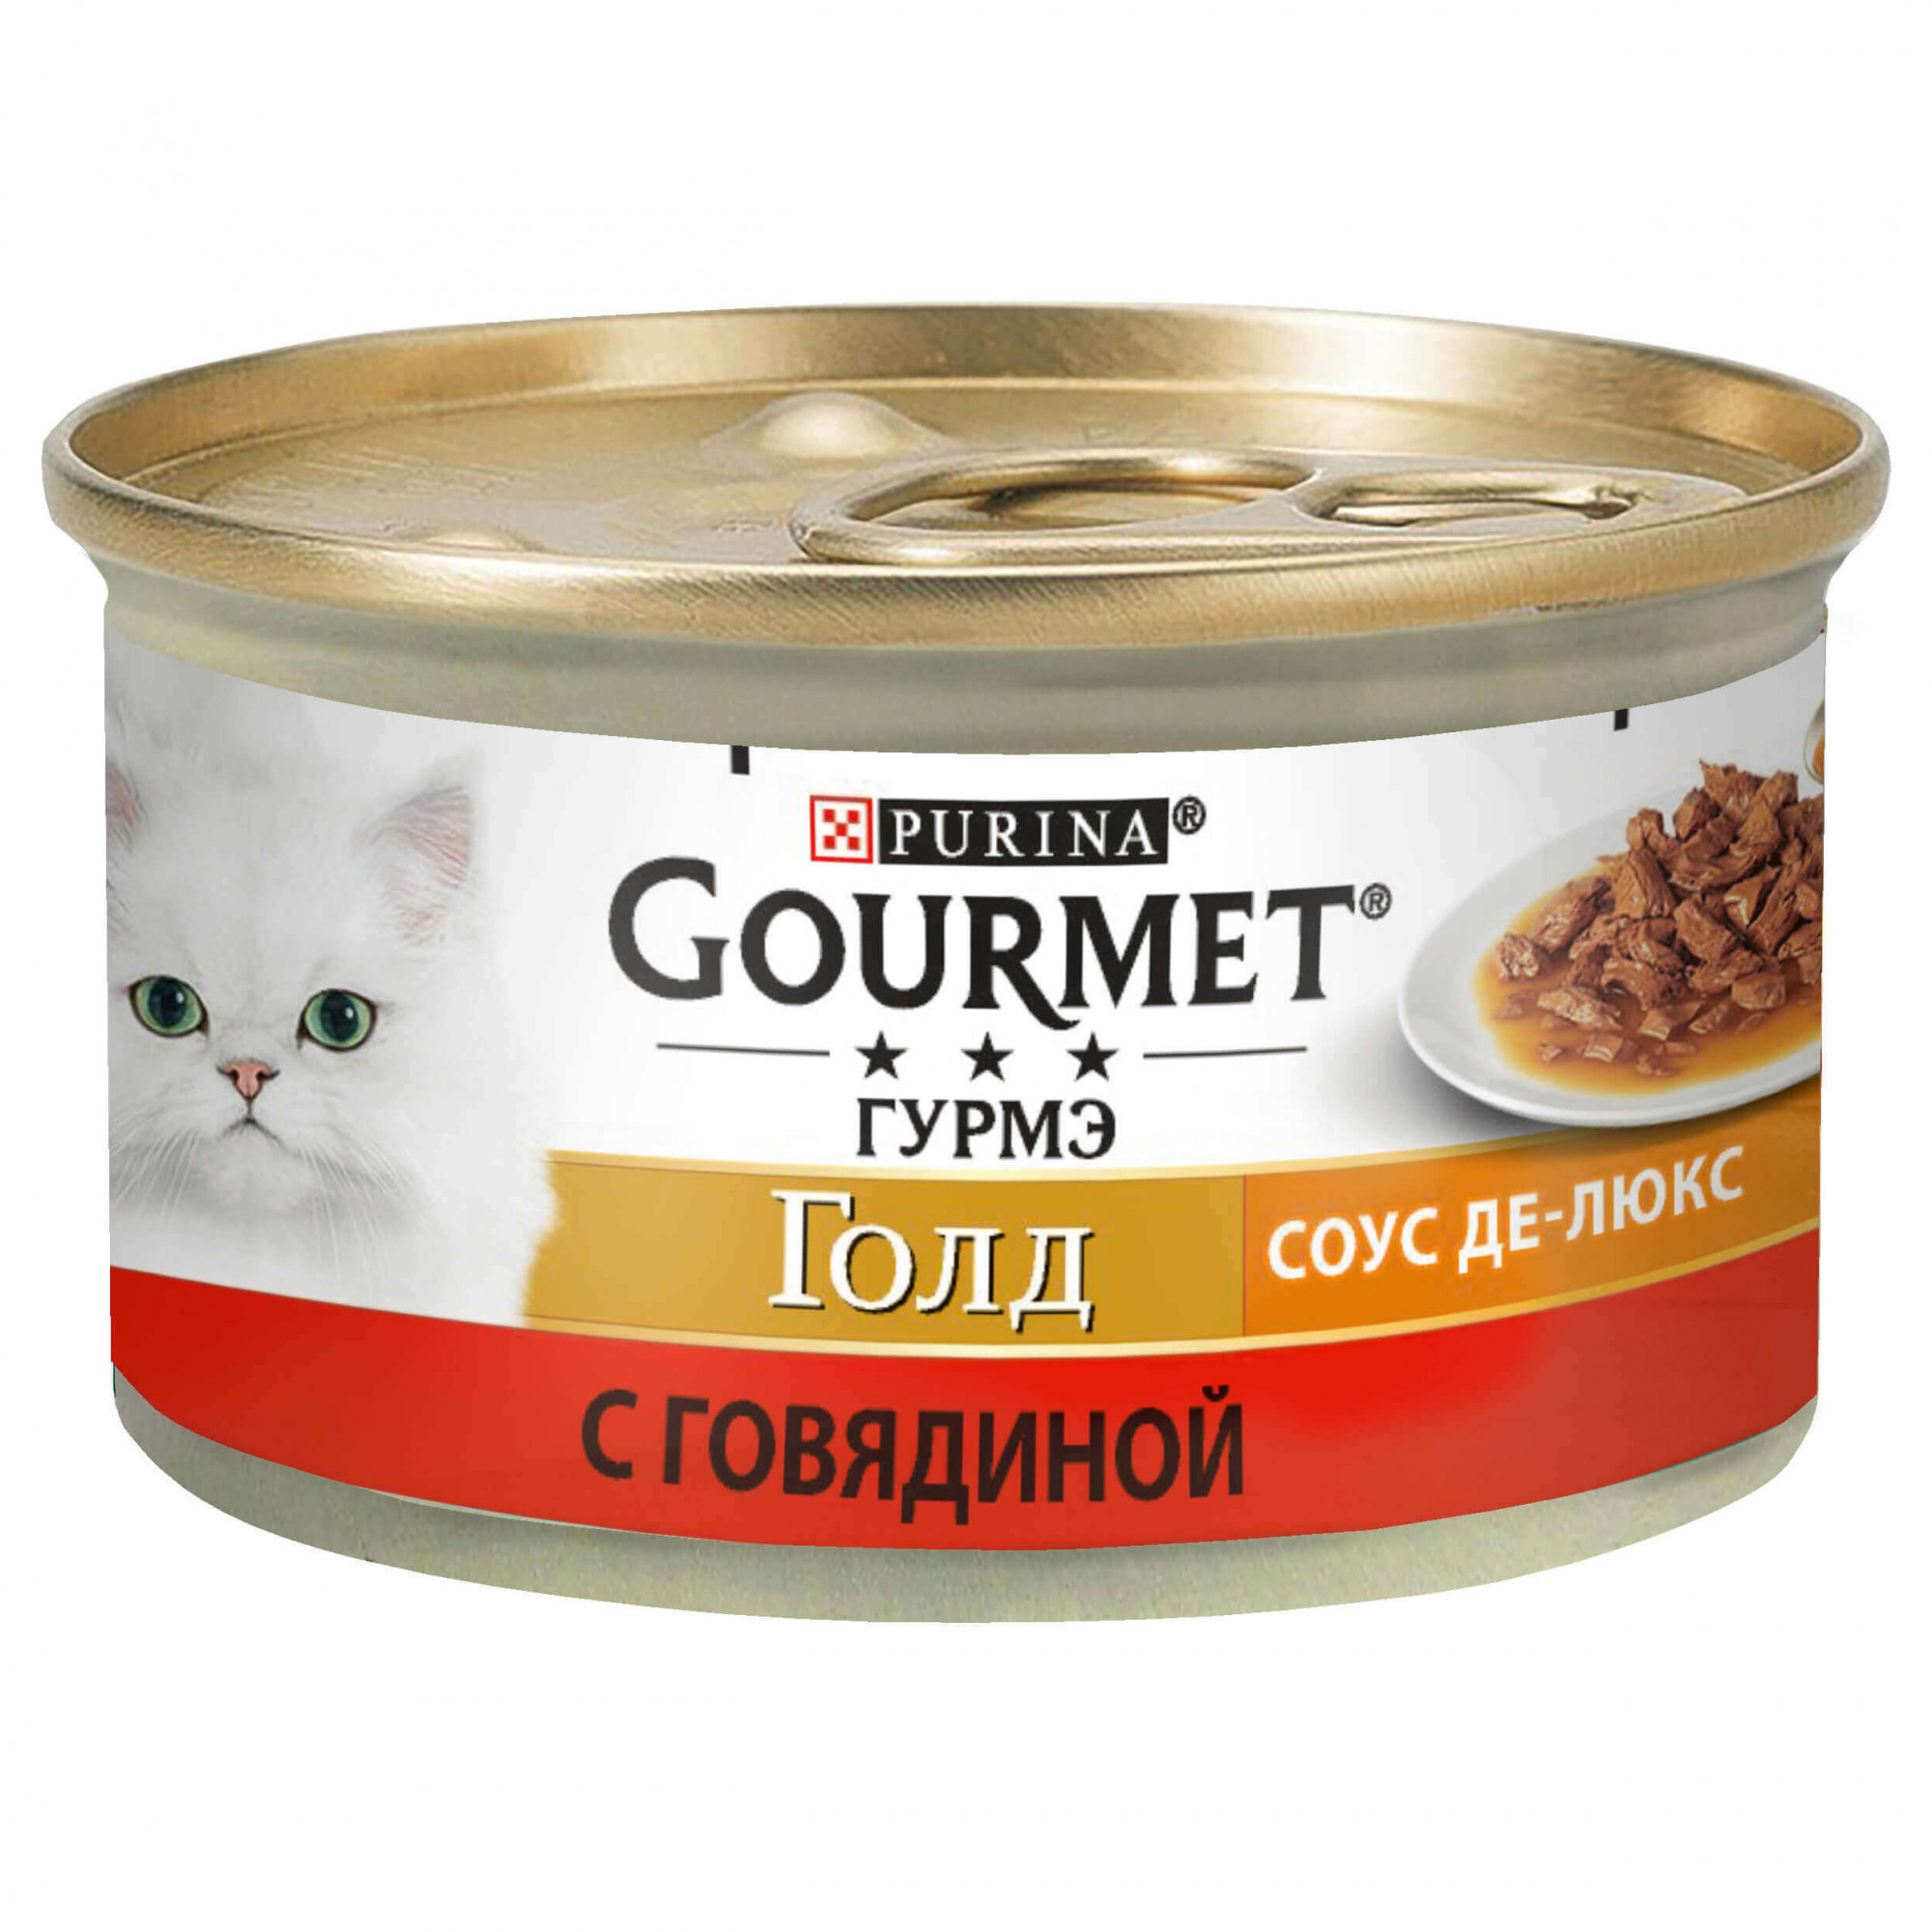 Gourmet Gold Соус Де-люкс з яловичиною 85 г (7613036705134) - зображення 1